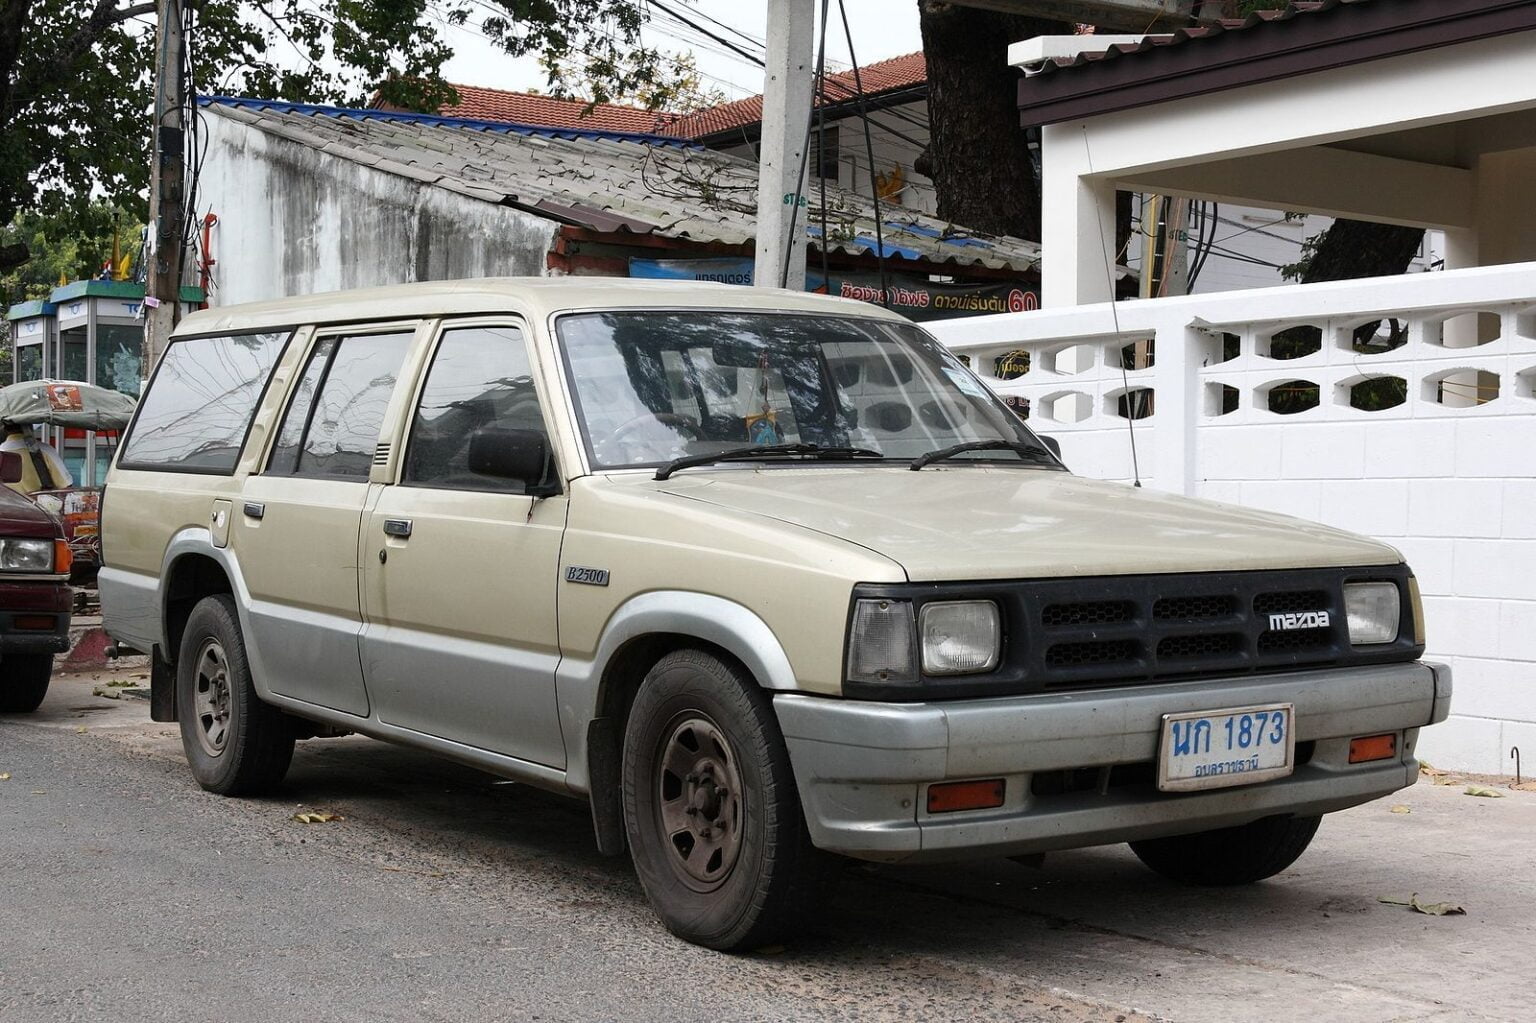 MazdaB2500-1996c